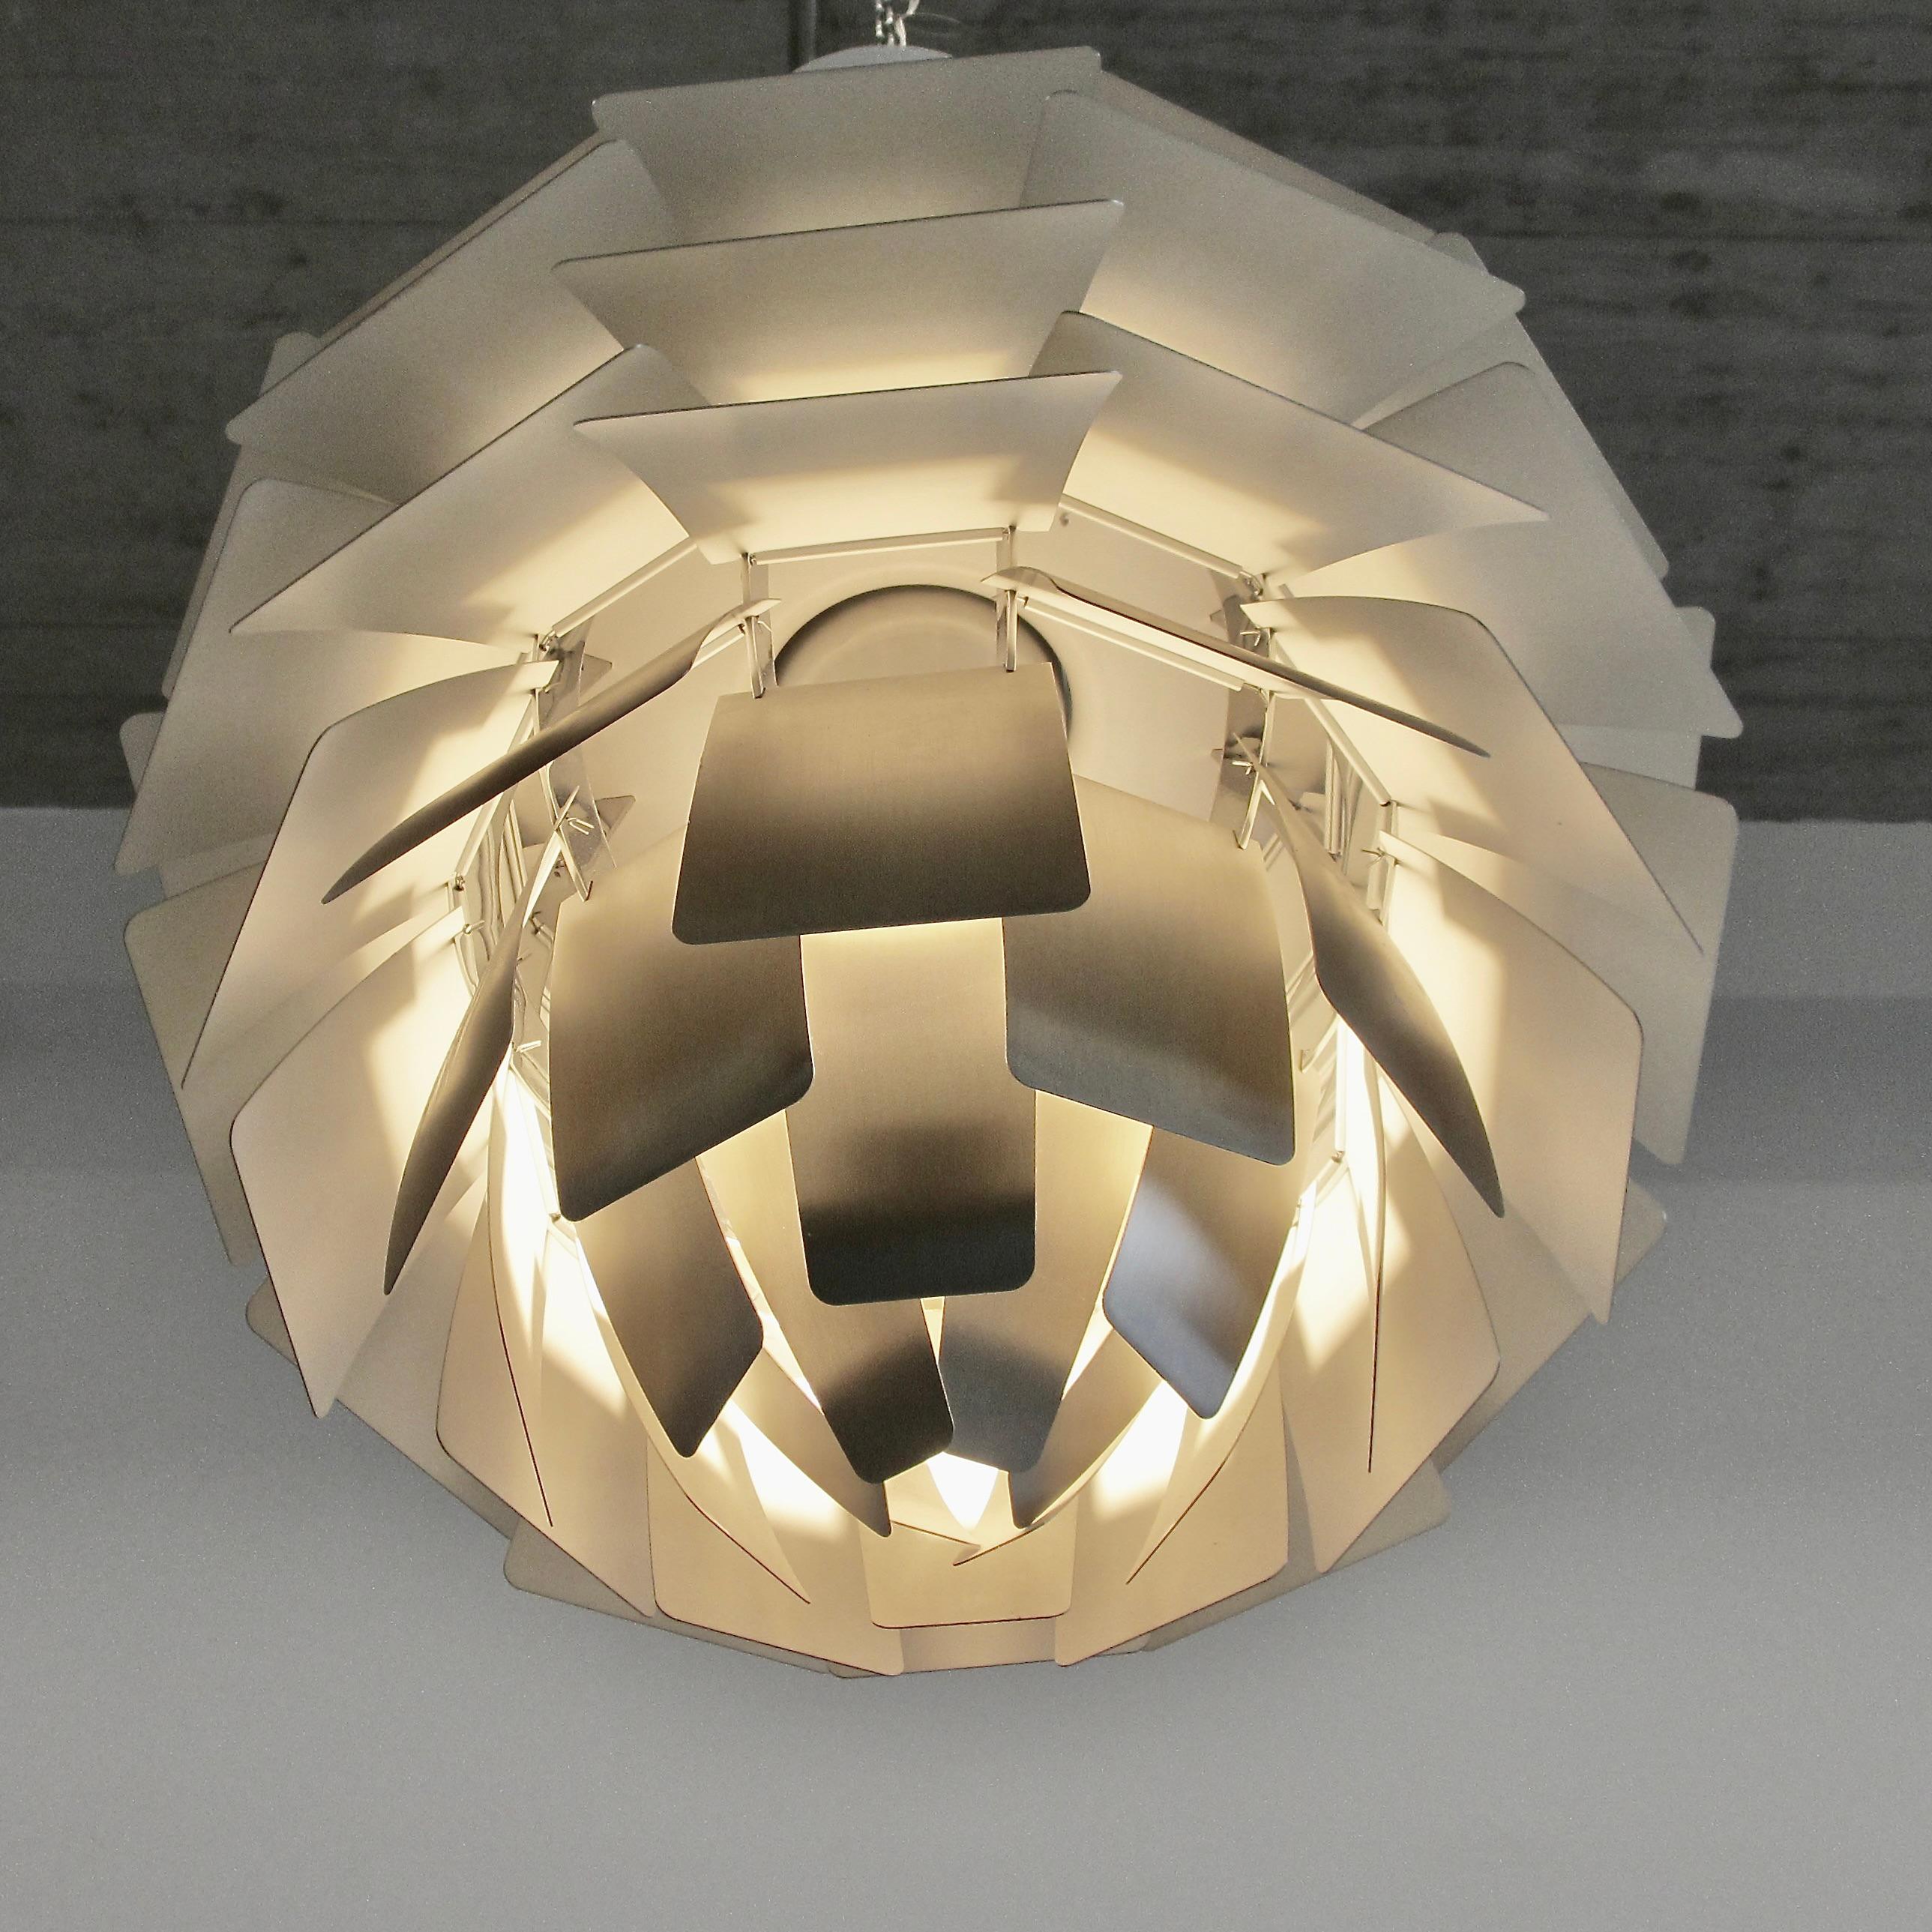 Mid-Century Modern Pendant Lamp Designed by Poul Henningsen. Denmark, Louis Poulsen, 2012